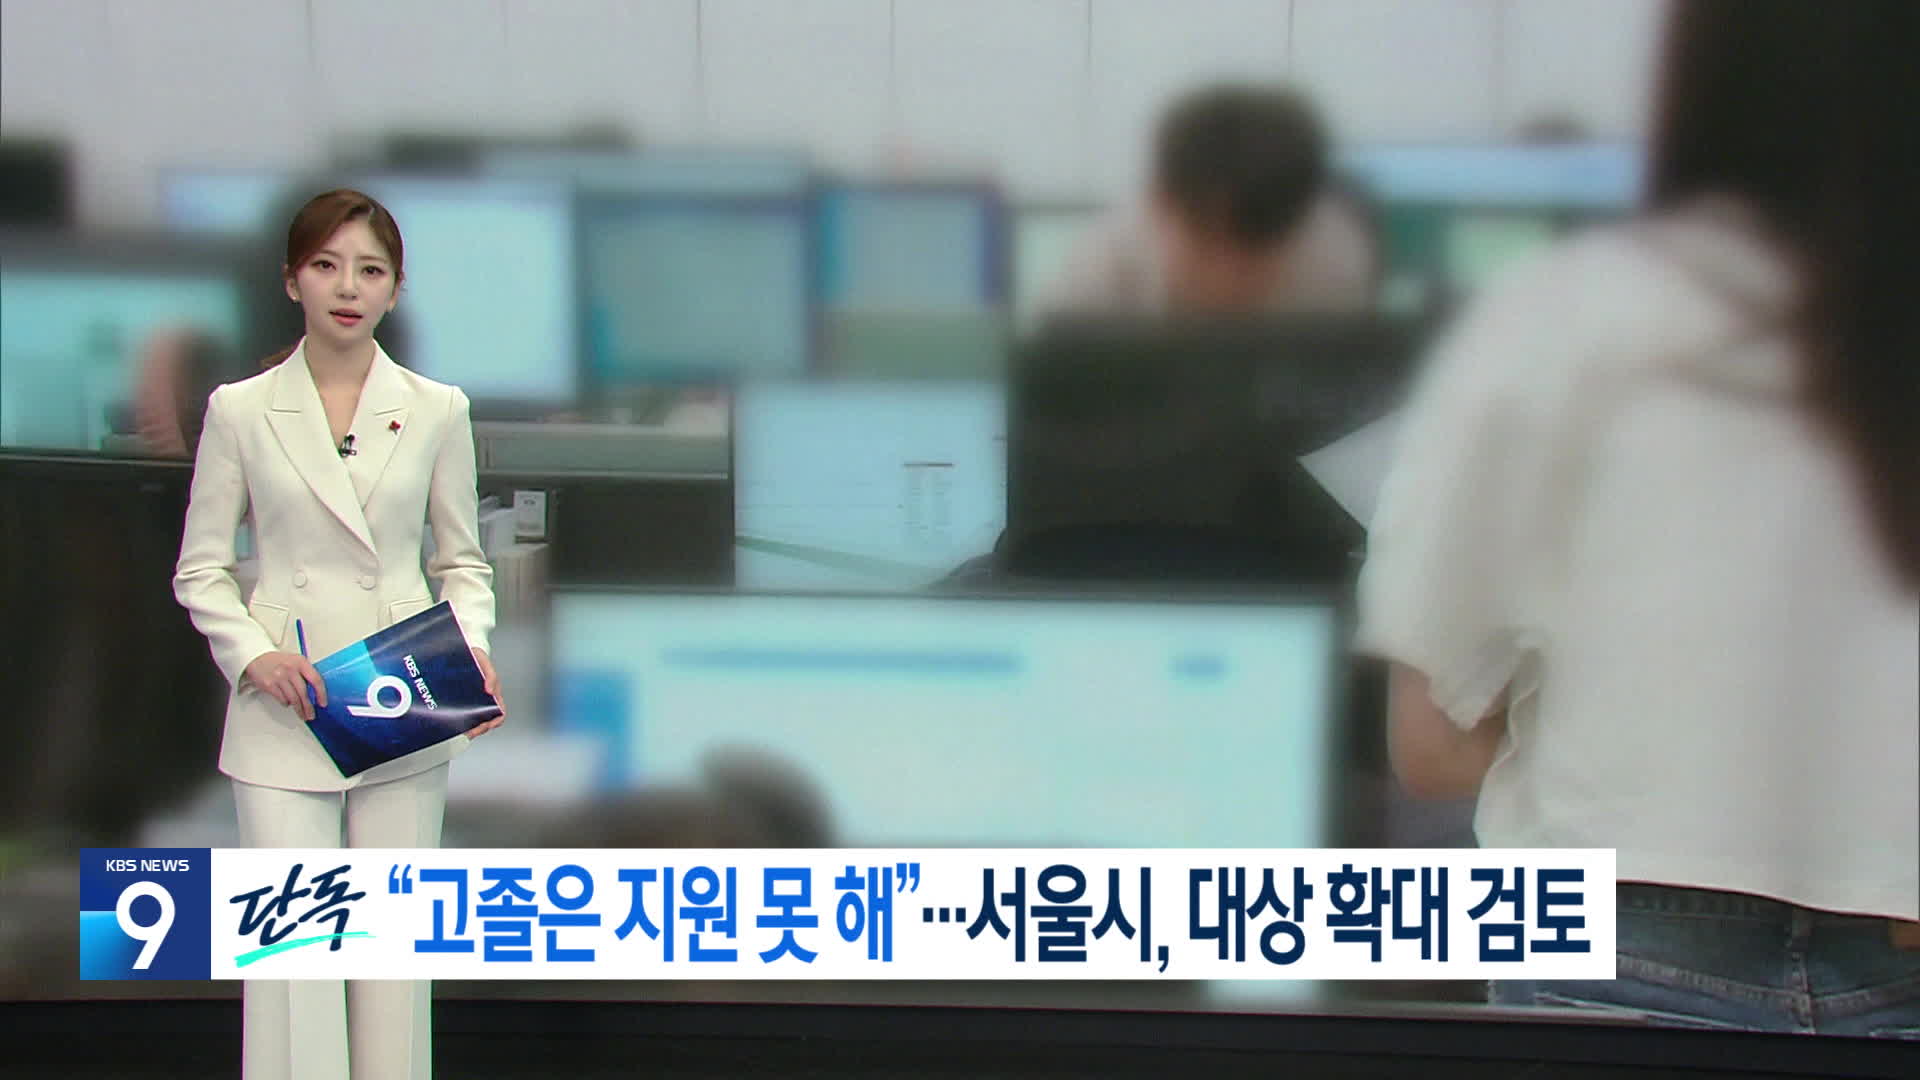 KBS 뉴스9 보도 화면, 지난해 12월 4일